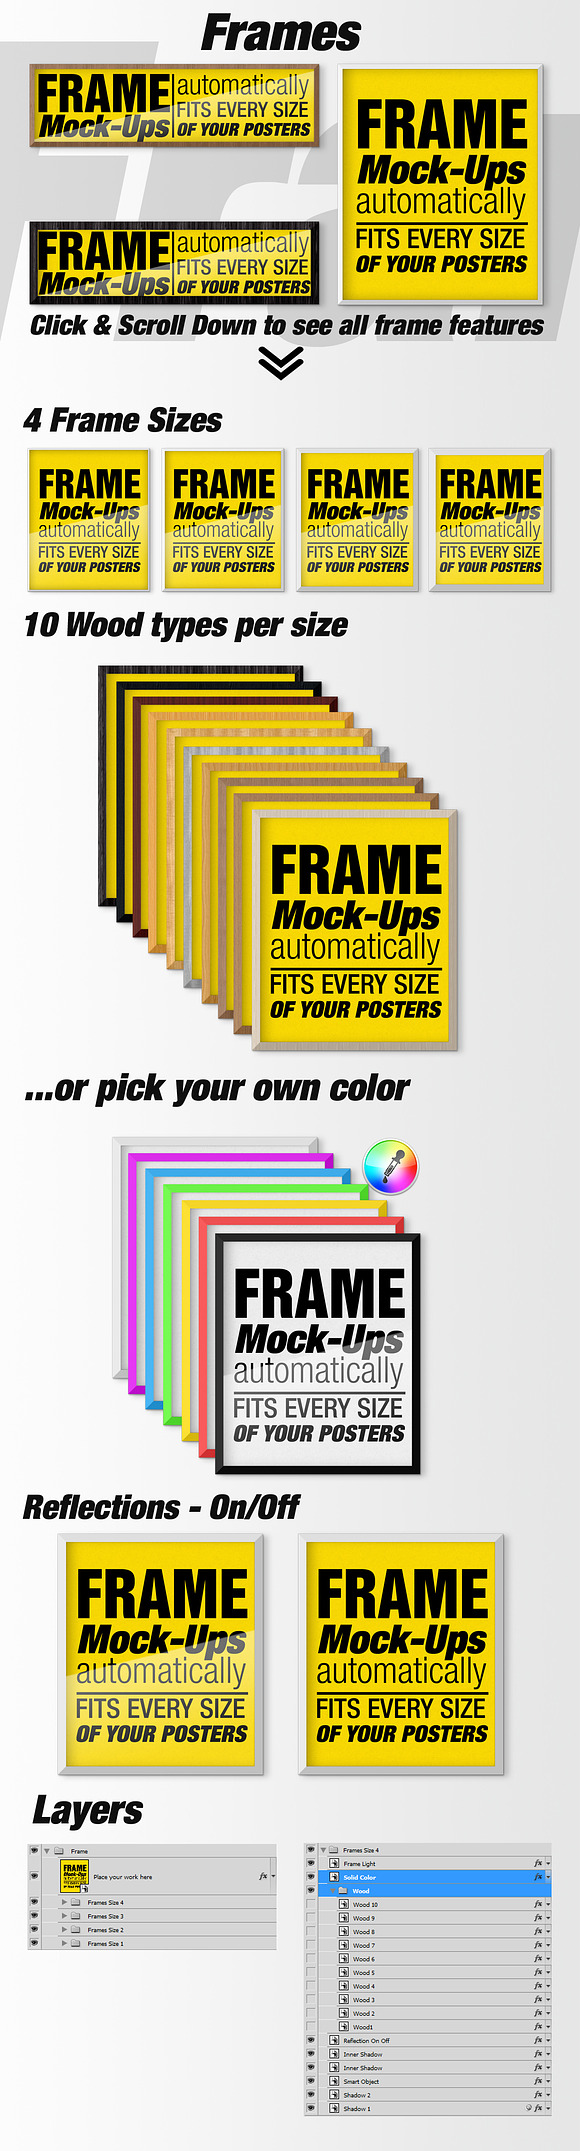 Canvas Mockups - Frames Mockups v 5 in Print Mockups - product preview 8